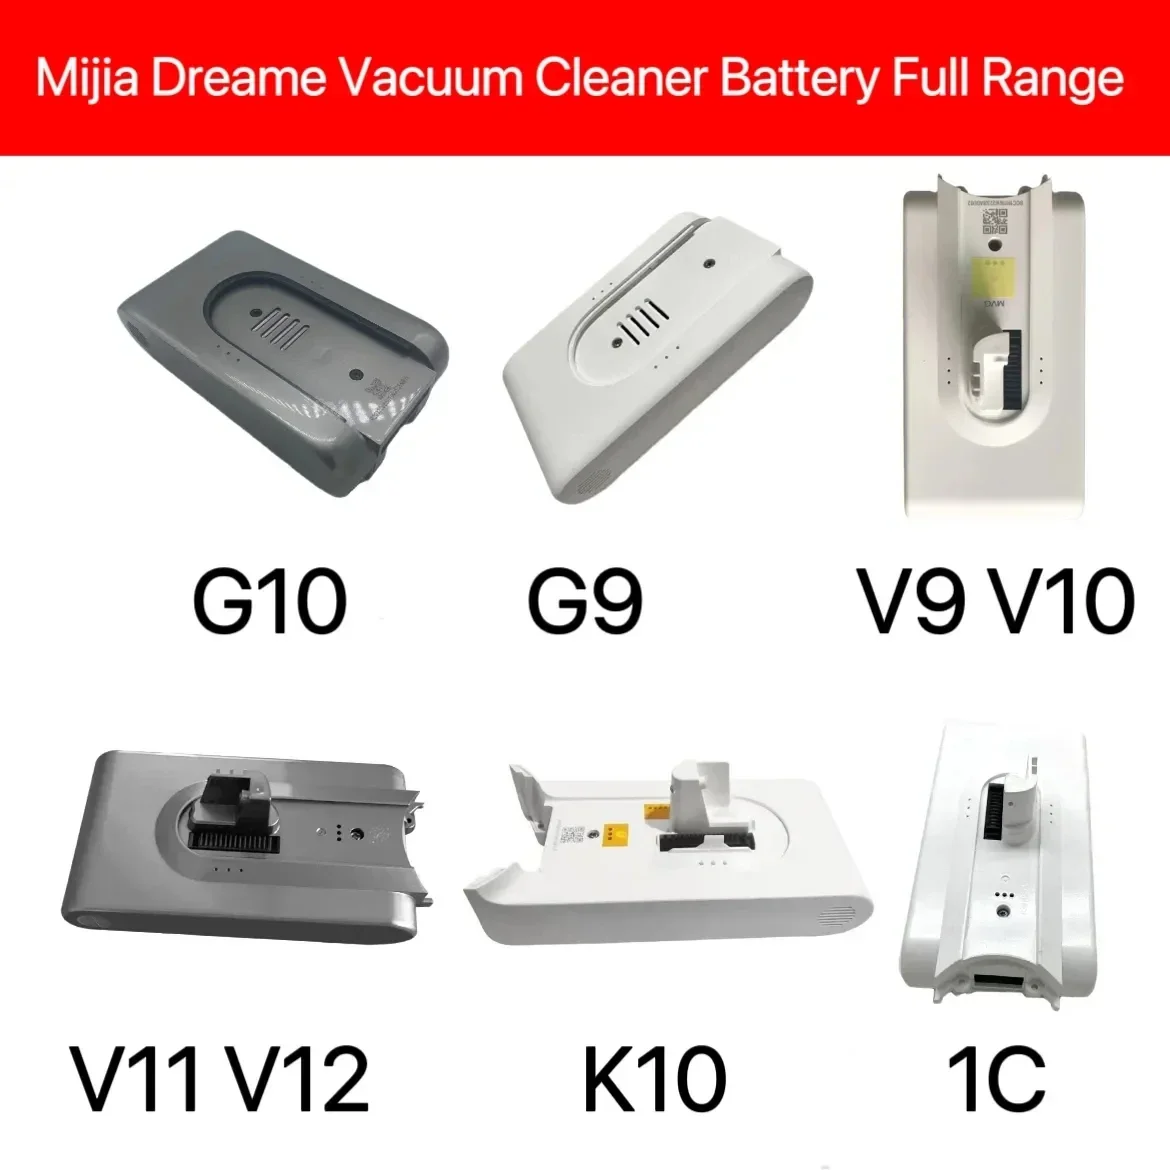 

For Mi Jia Dreame Vacuum Cleaner Full Series G9 G10 V8 V9 V10 V11 V12 K10 1C Battery